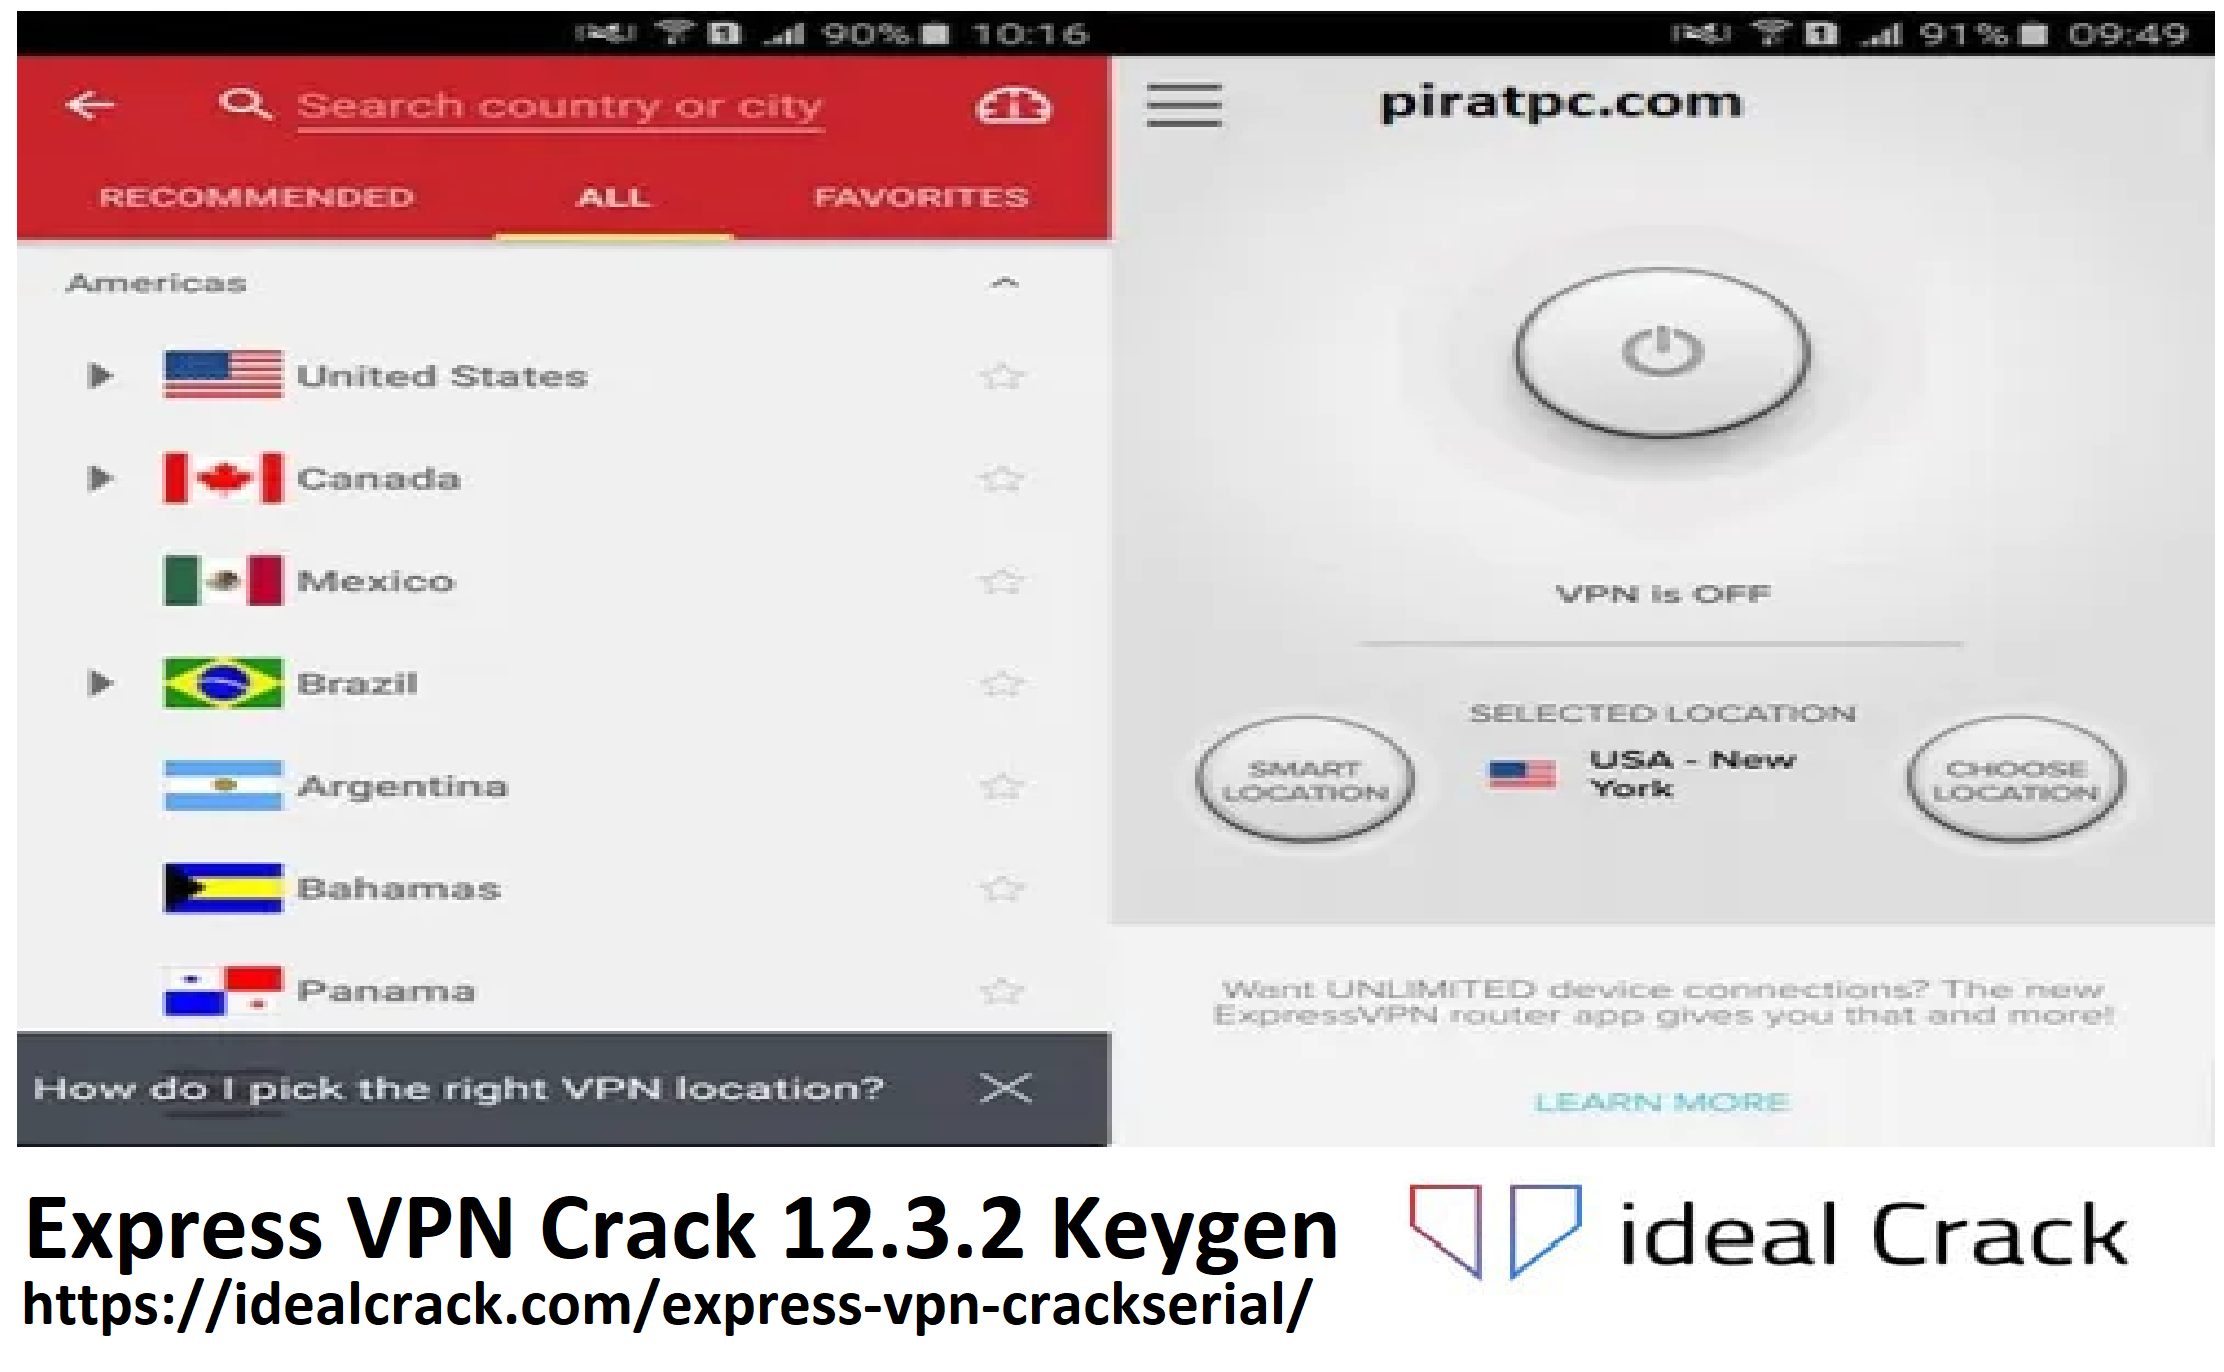 Express VPN Crack 12.3.2 Keygen